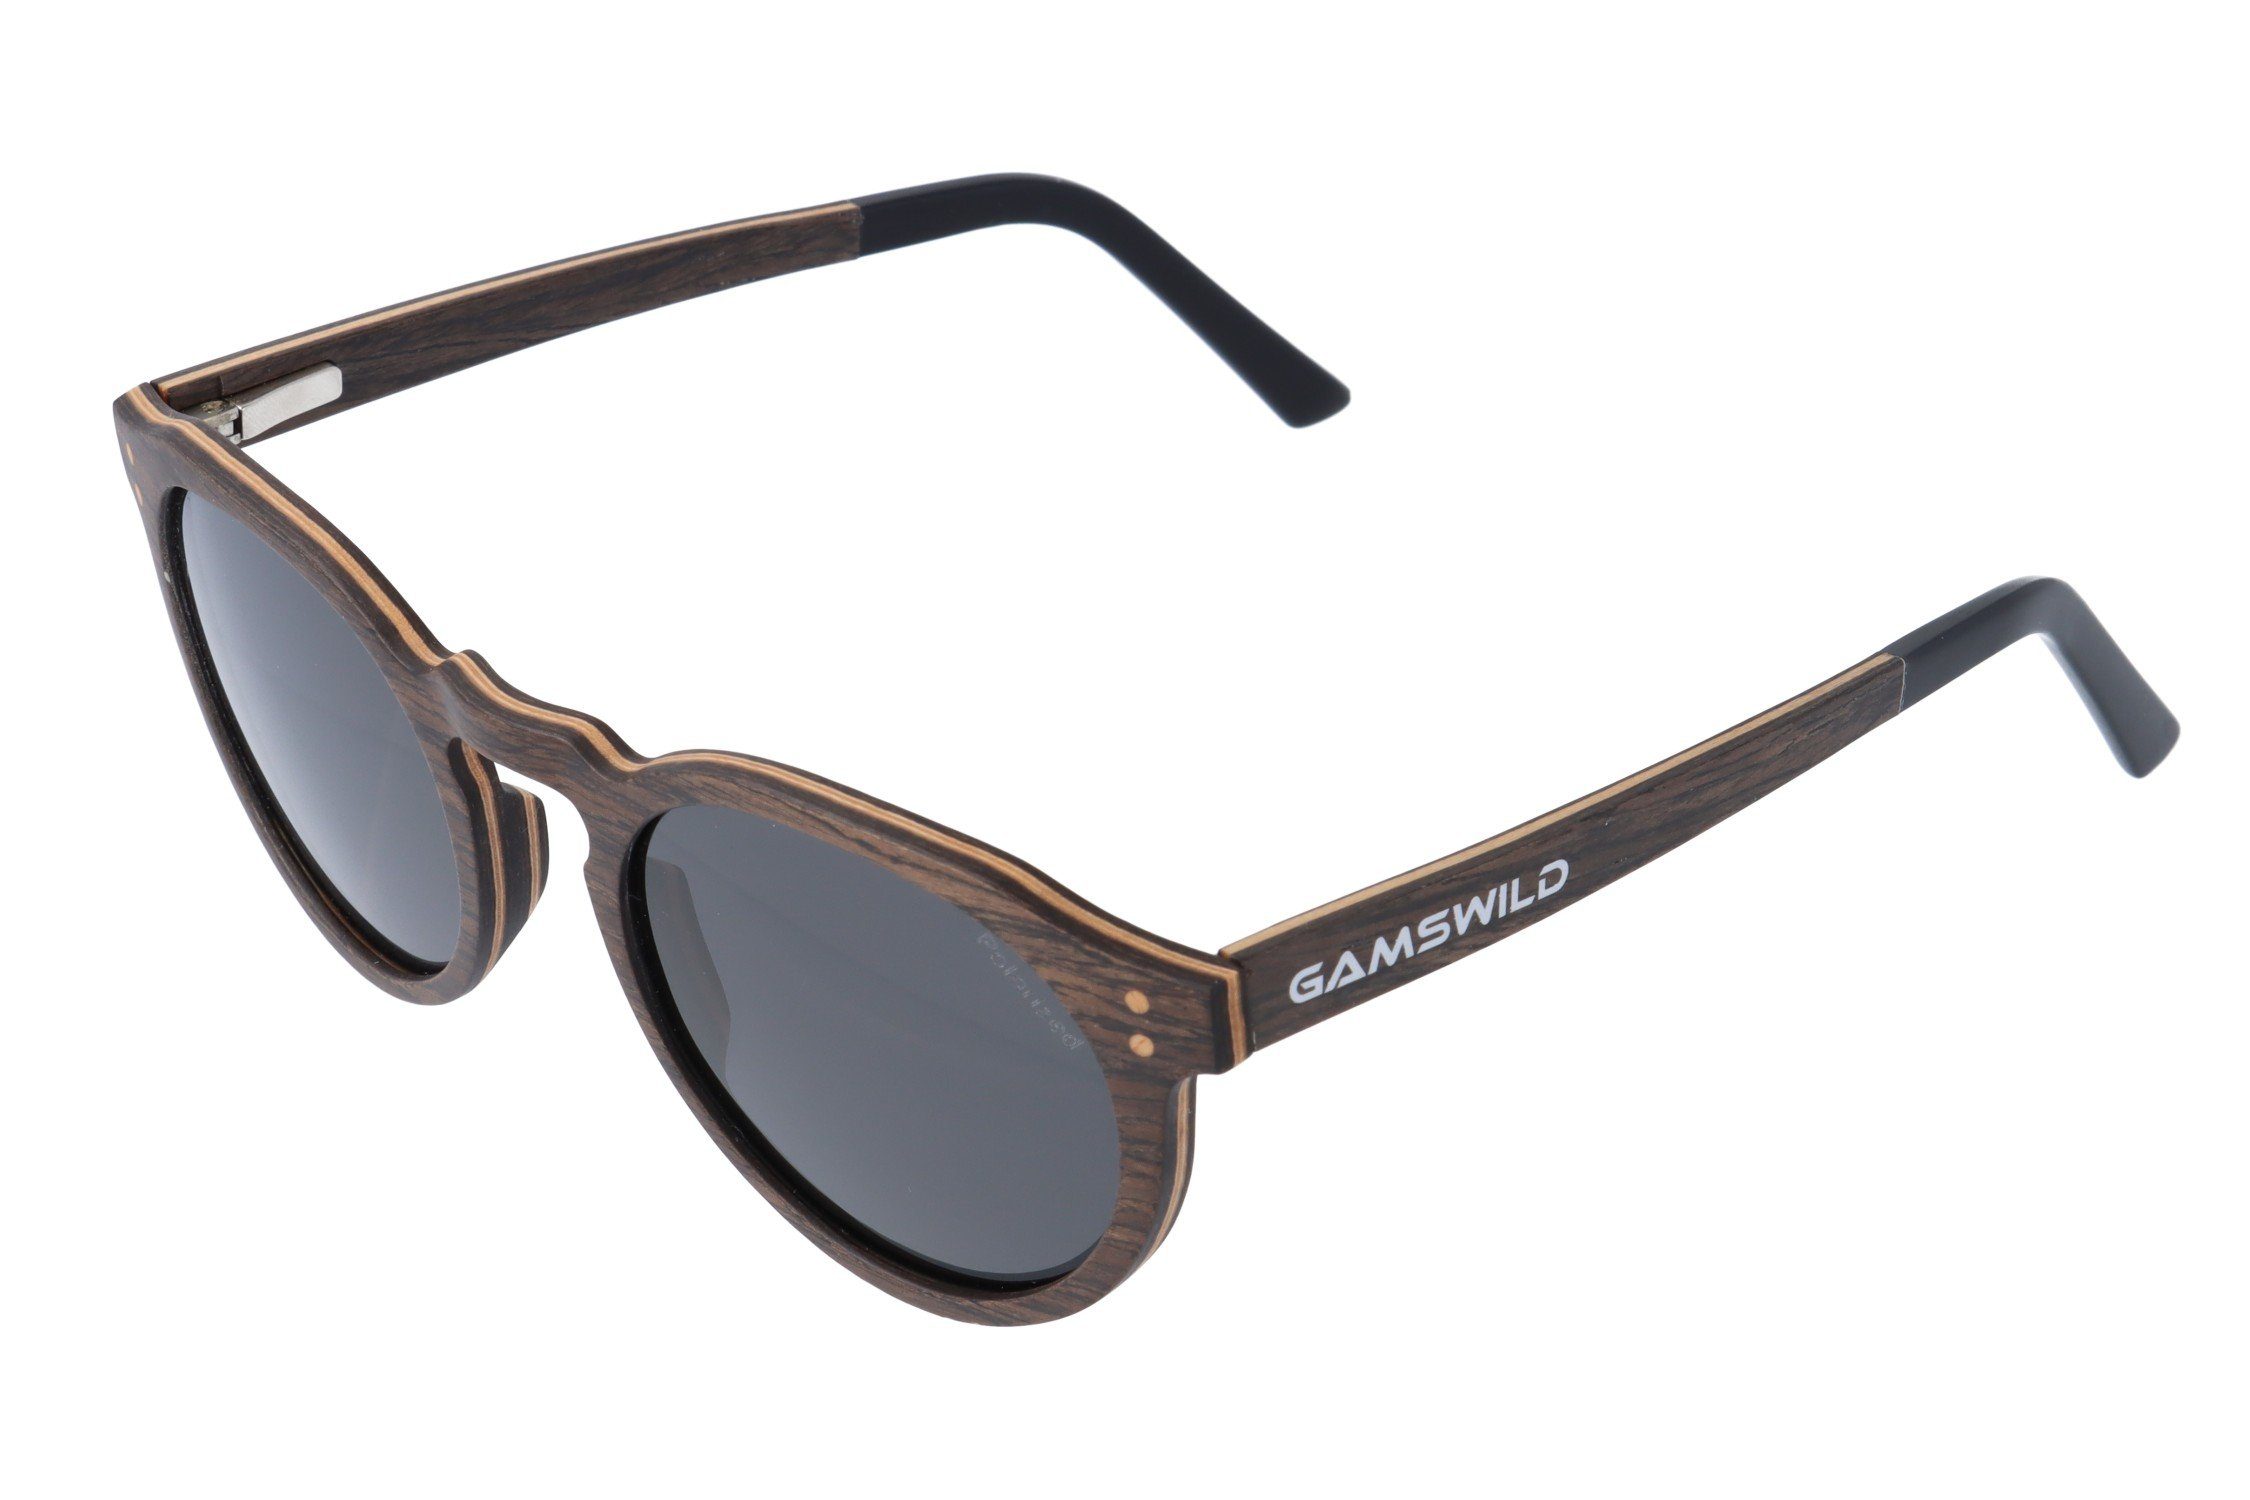 Gamswild Sonnenbrille WM0014 GAMSSTYLE Holzbrille Damen Herren Unisex, polarisierte Gläser in braun, grau & G15